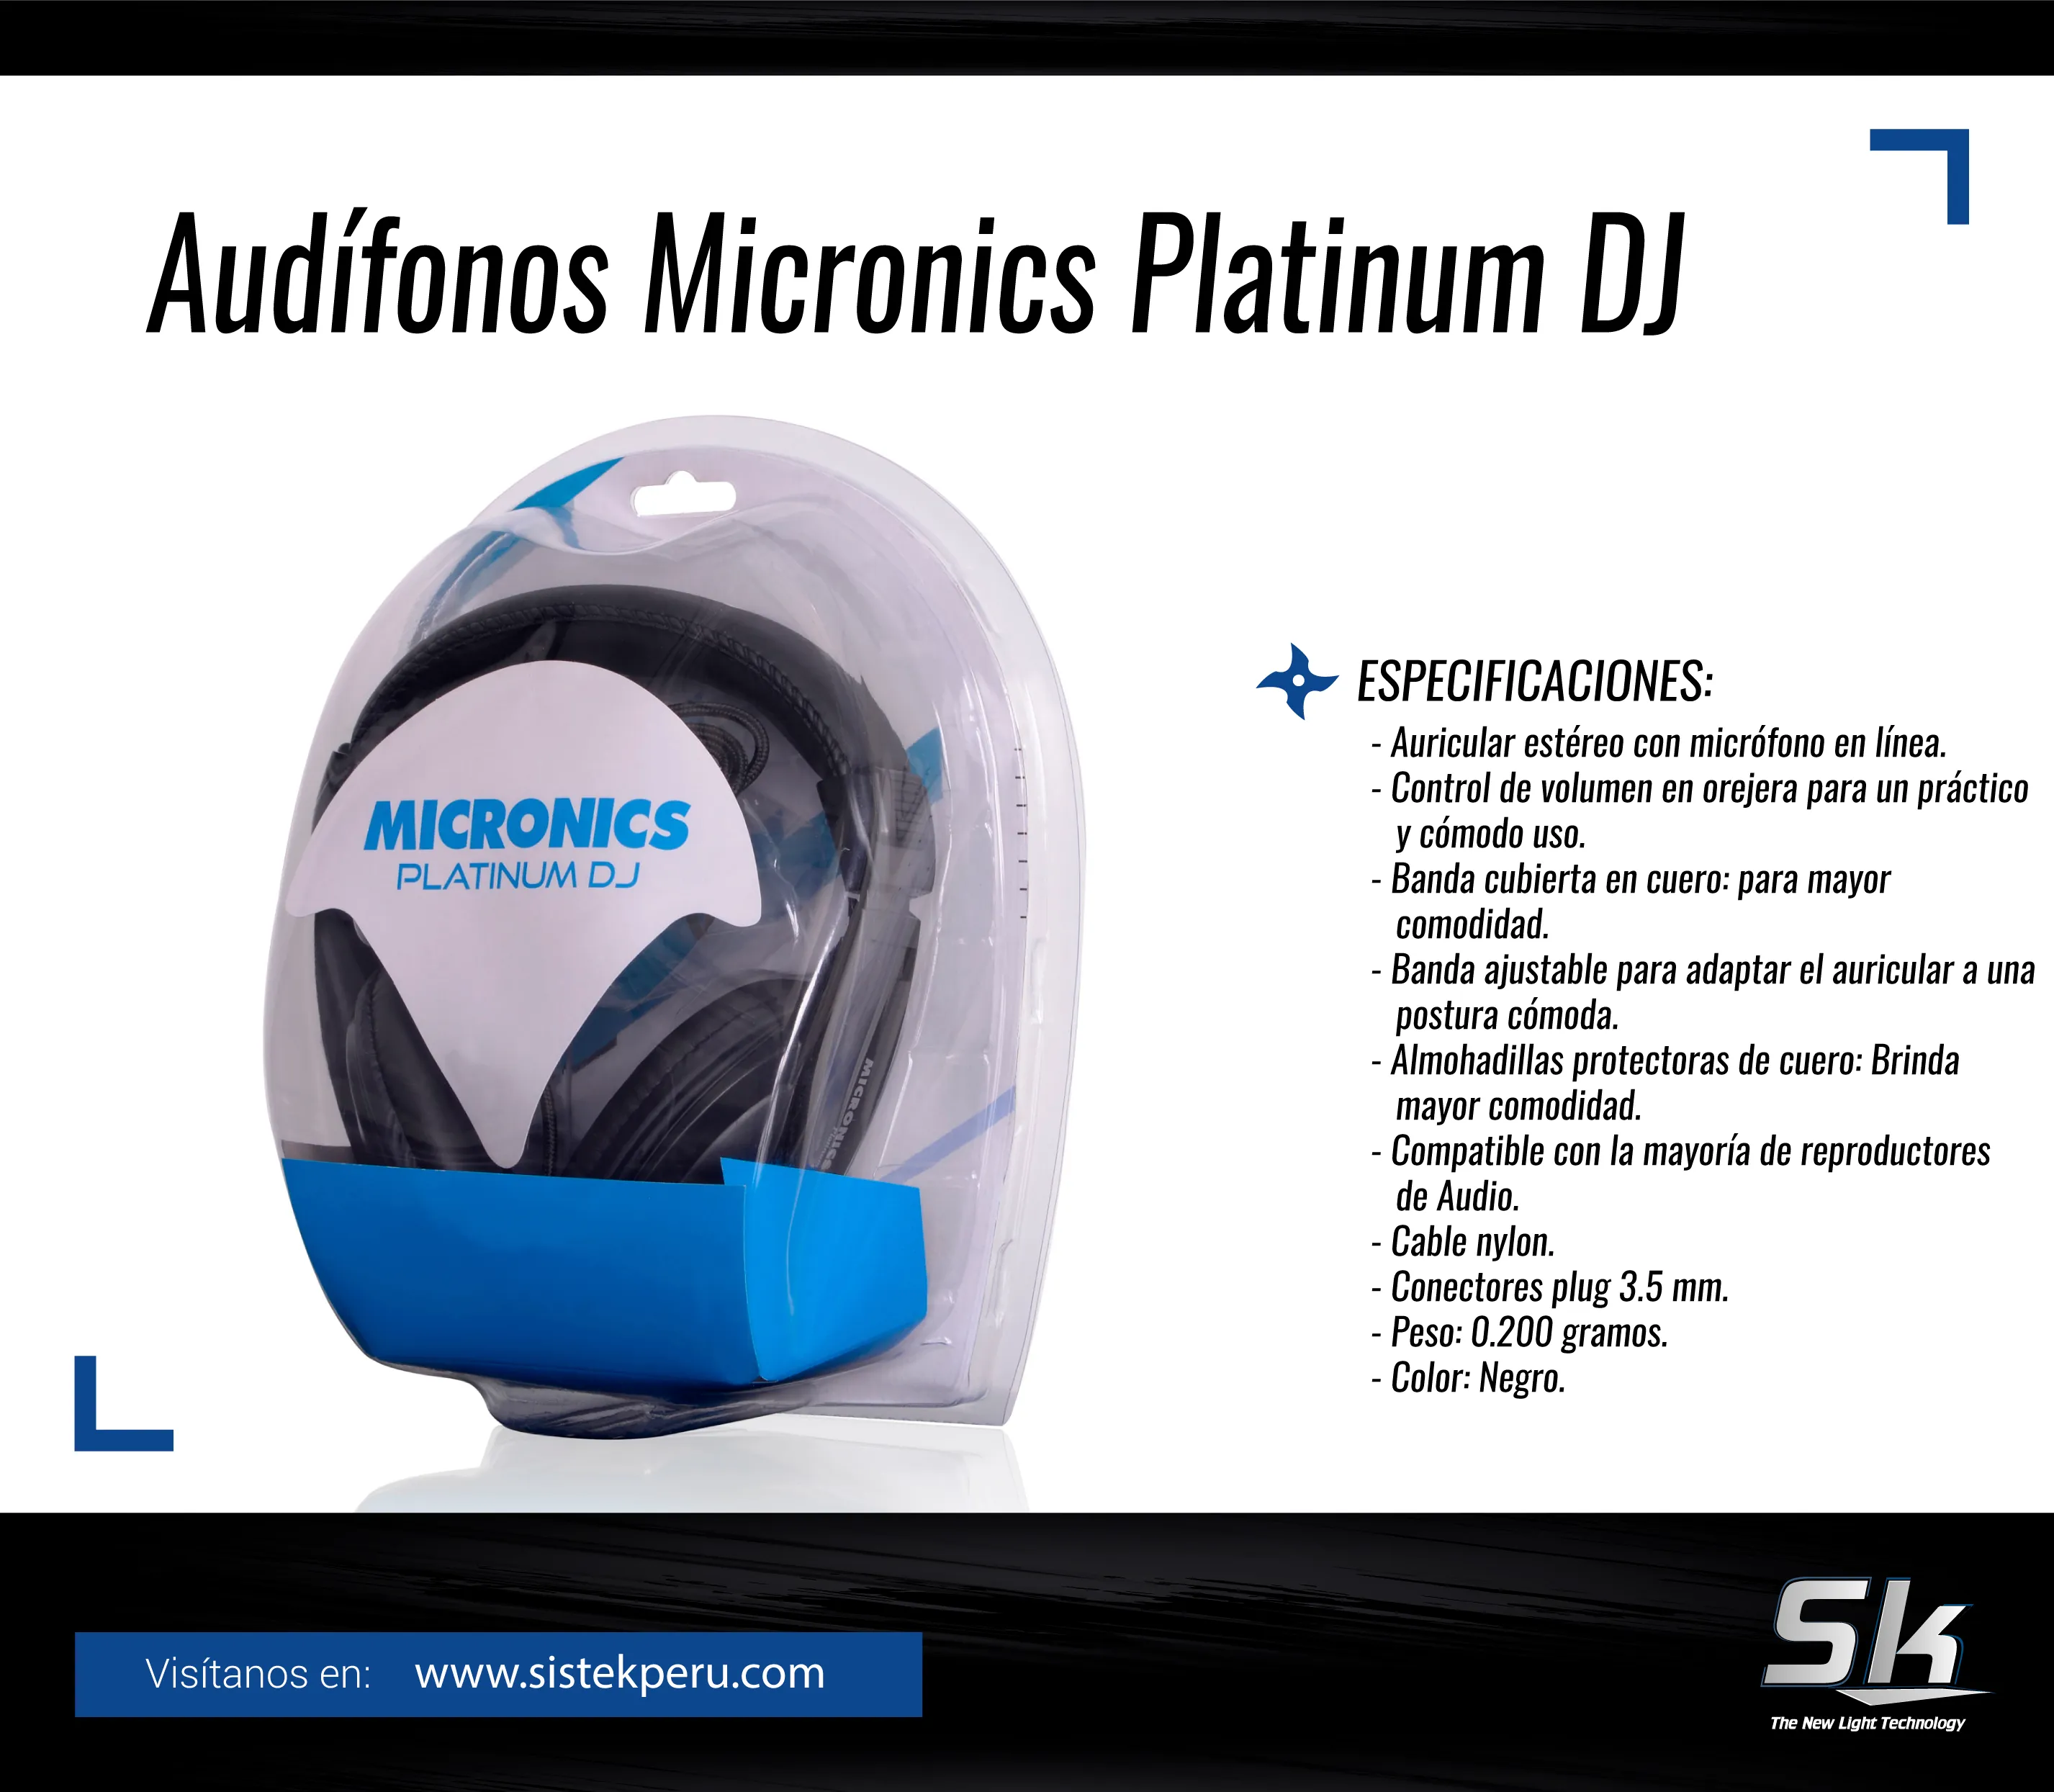 Audifonos Platinum DJ Micronics